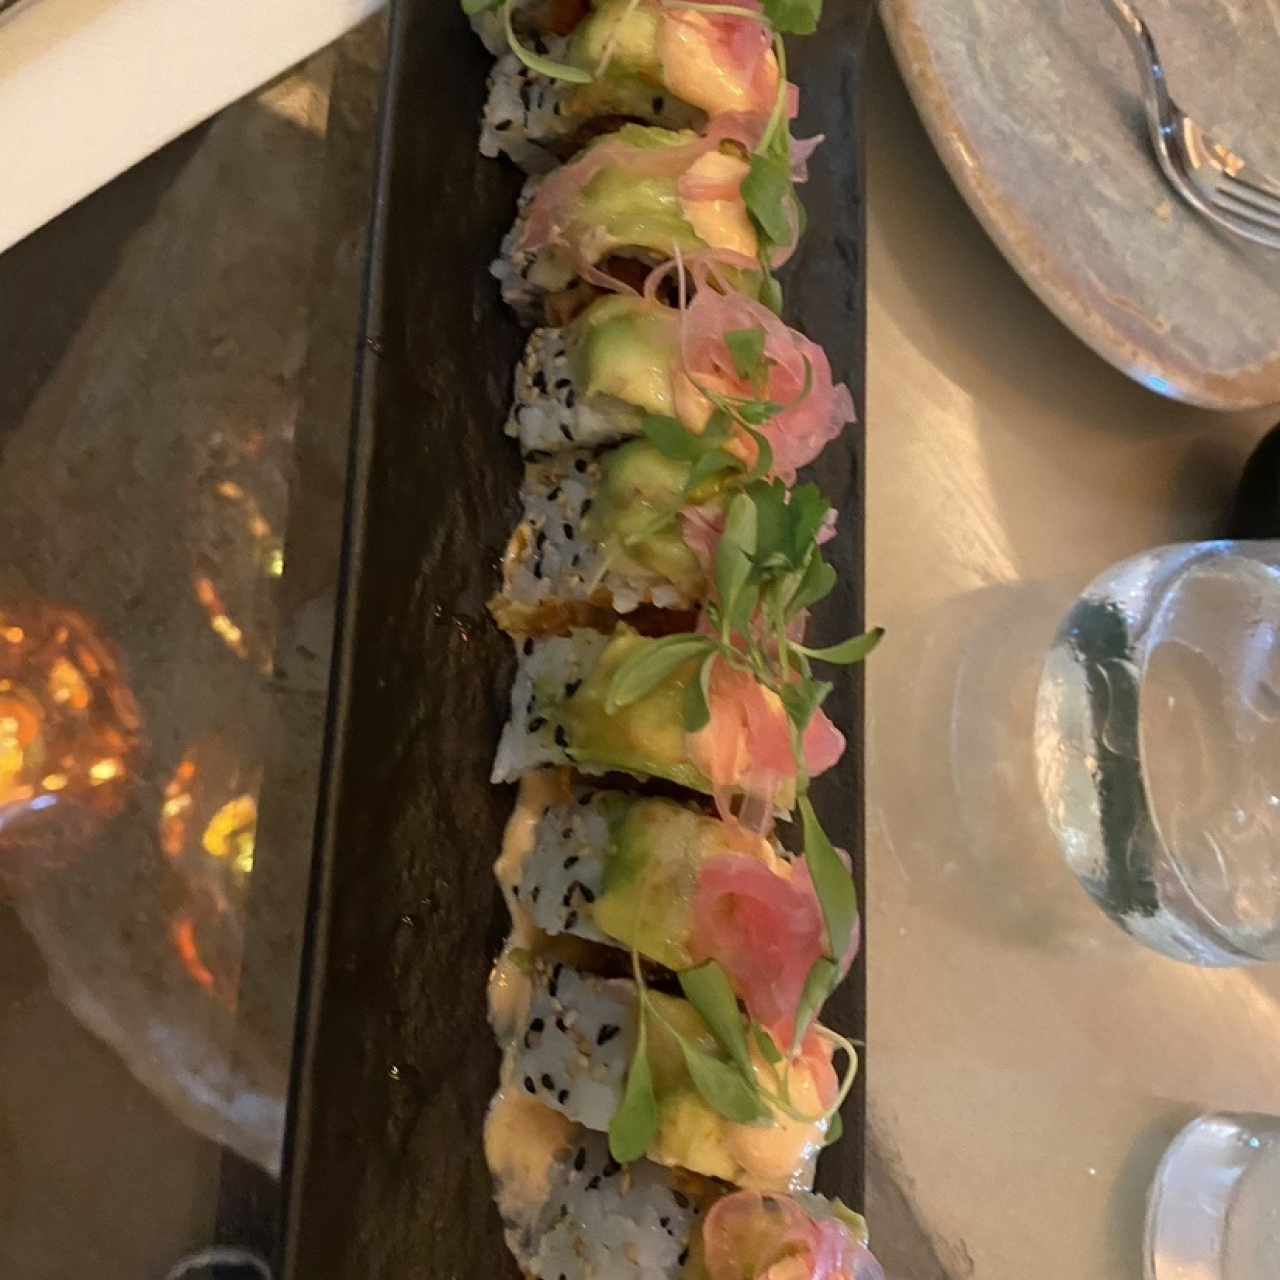 Sushi - Spicy Tuna Roll